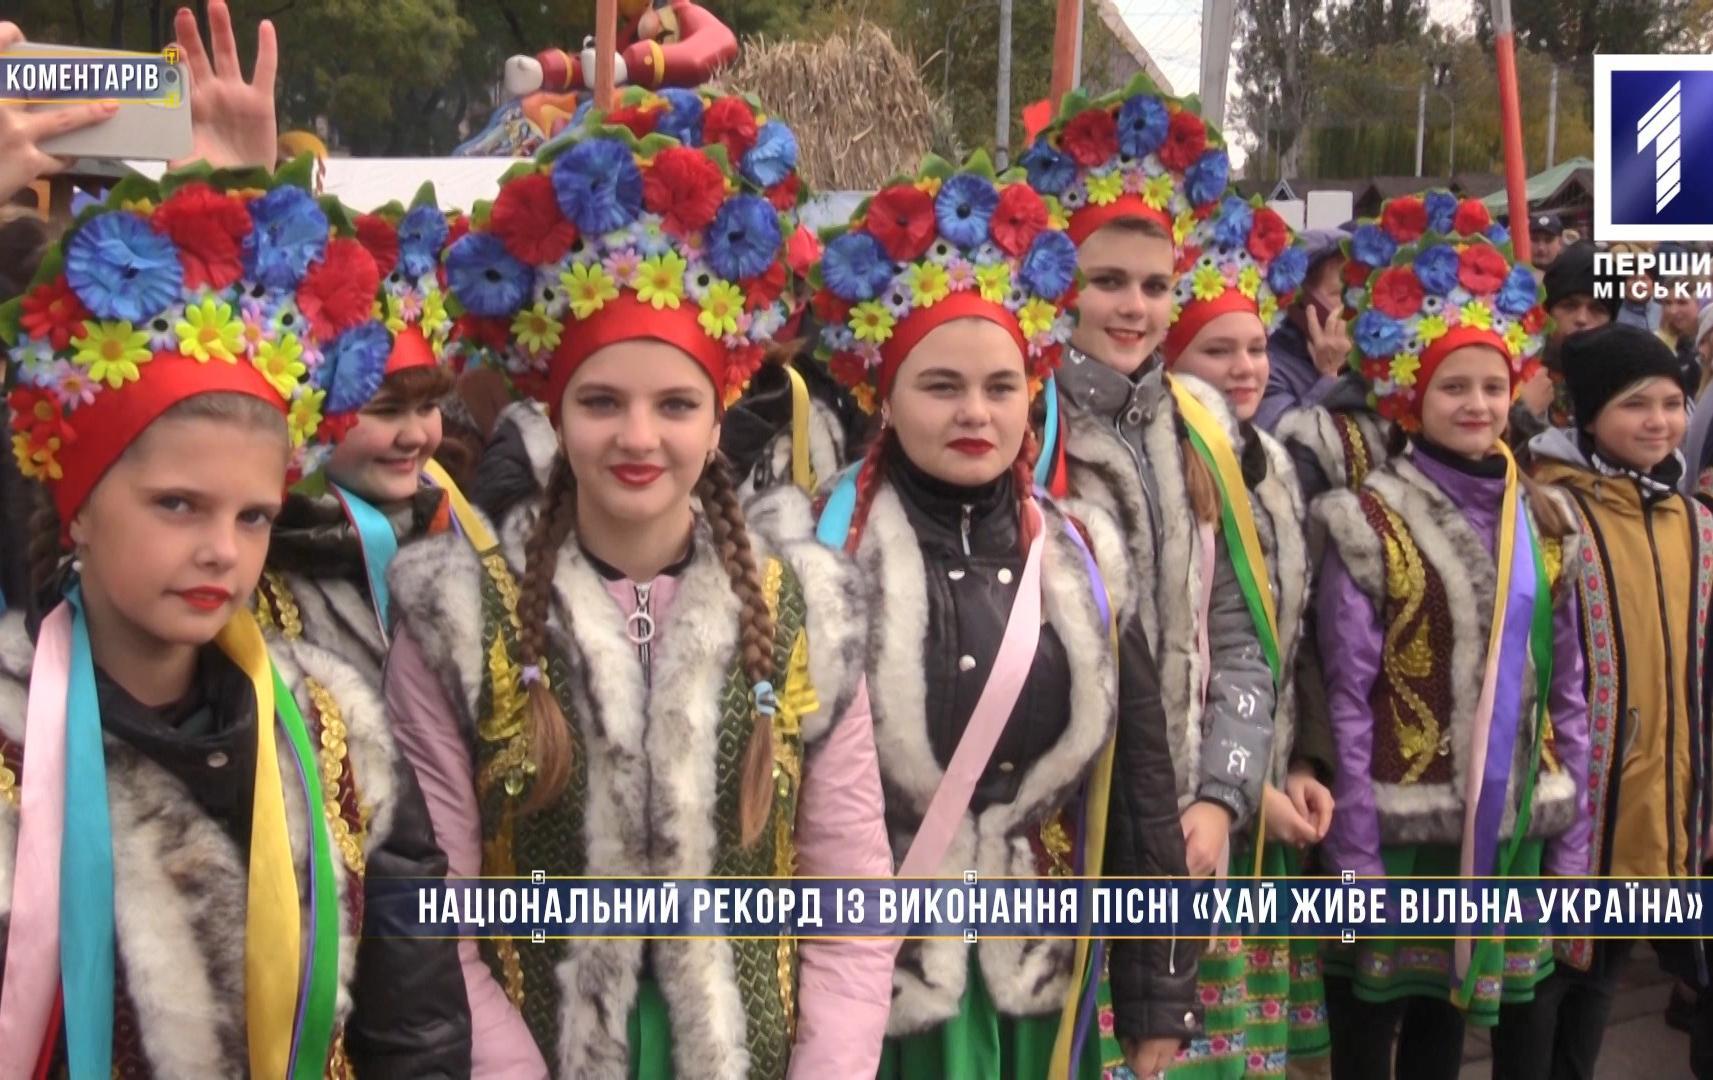 Без комментариев: национальный рекорд по исполнению песни «Хай живе вільна Україна»